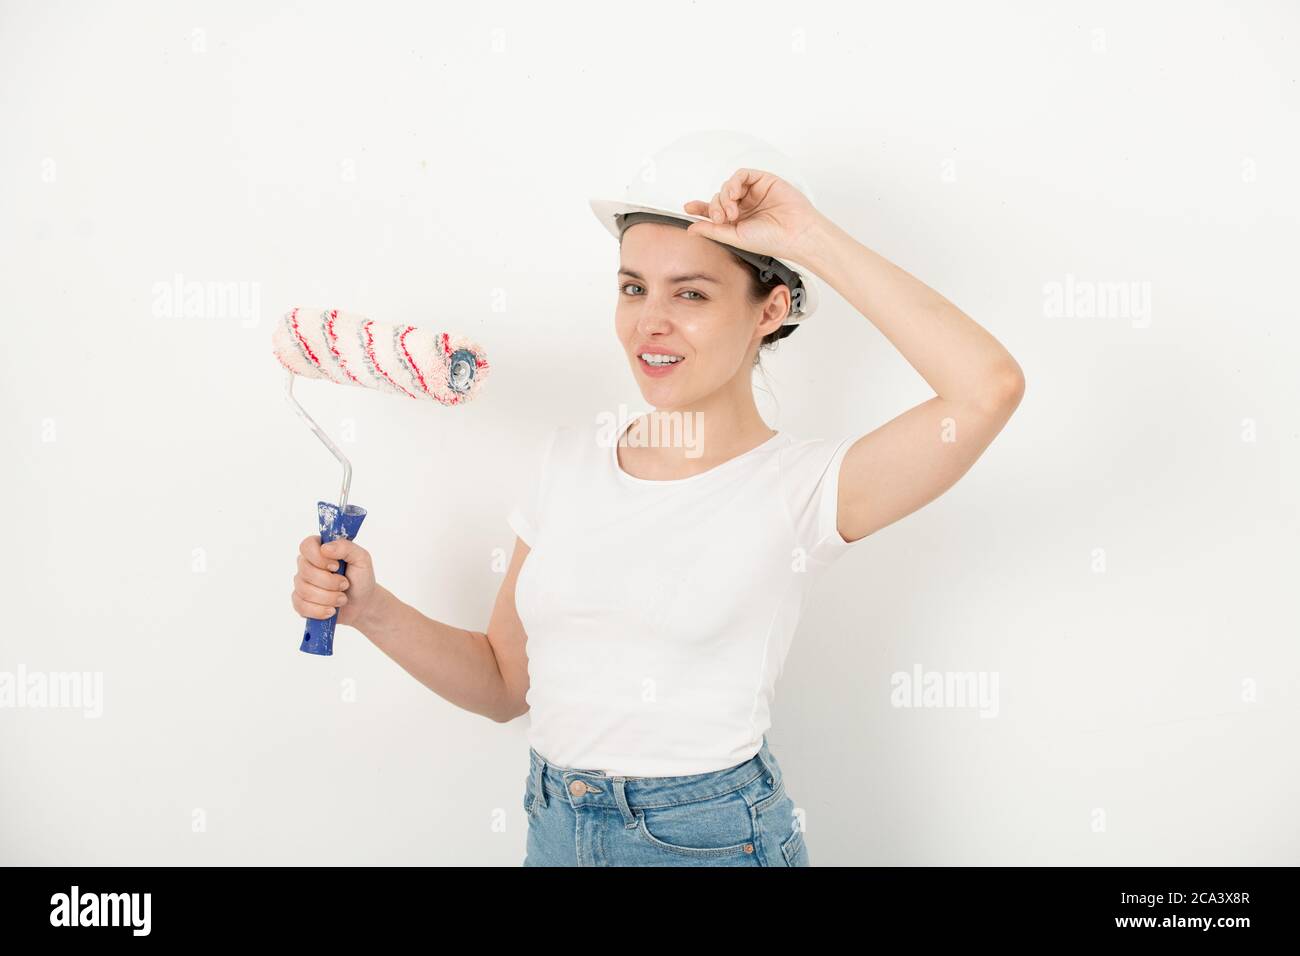 Ritratto di giovane donna sicura positiva che regola il cappello e tiene il rotolo di vernice contro la parete bianca Foto Stock